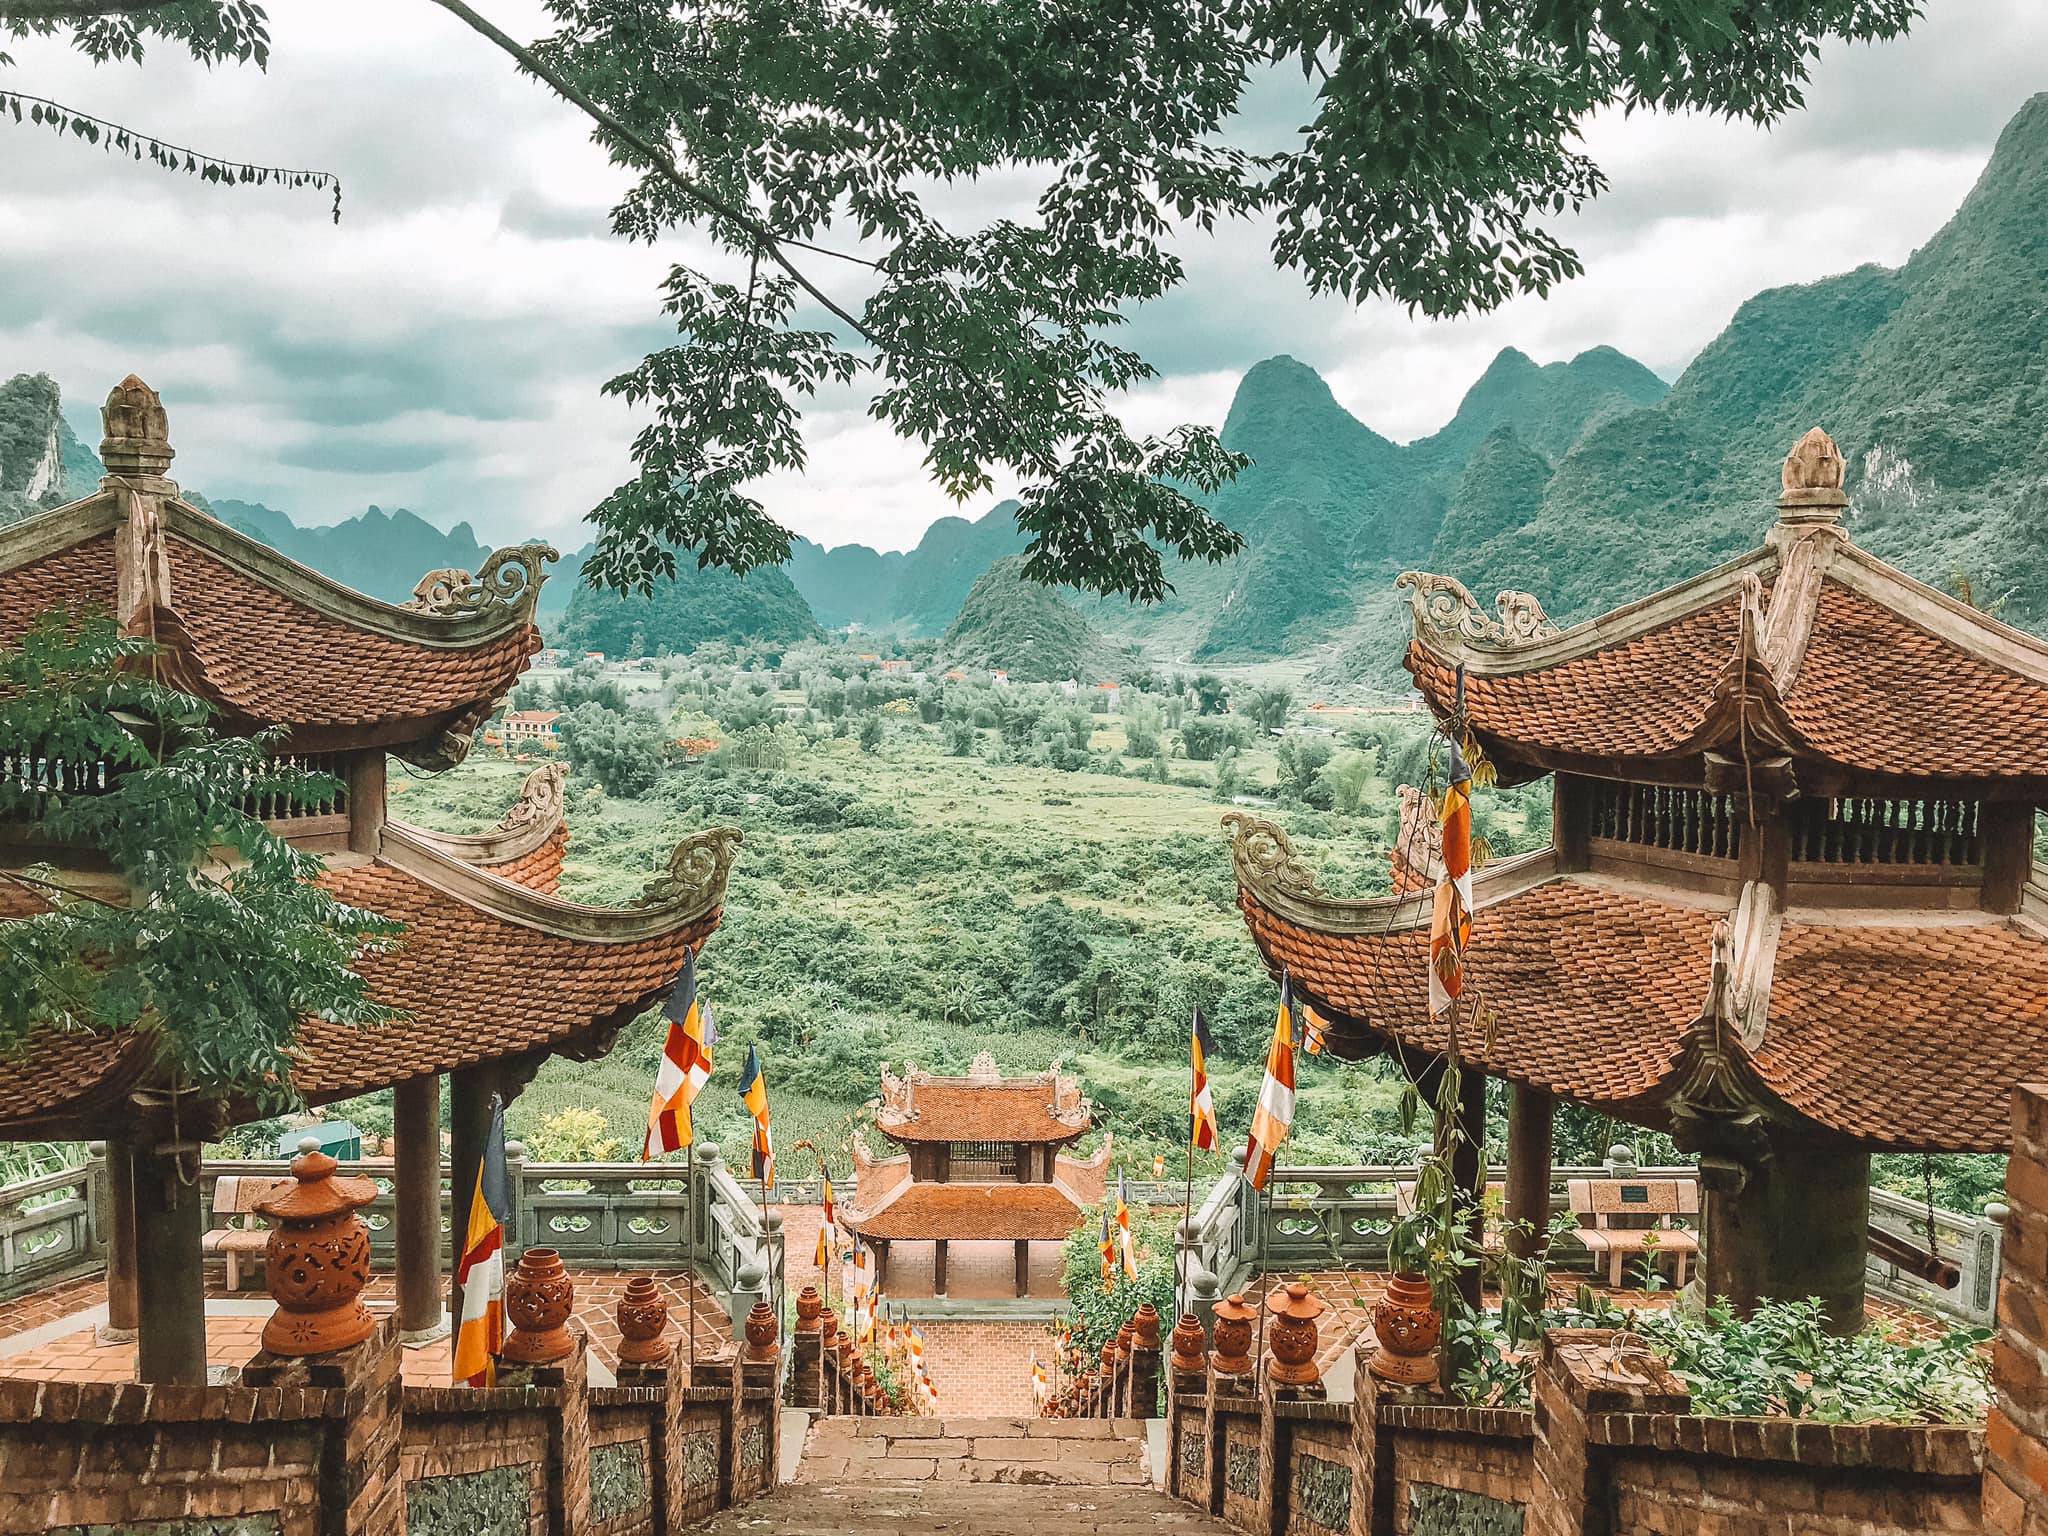 Tour du lịch Miền Bắc - Cao Bằng - Hà Giang - Thác Bản Giốc 6 ngày mùa hoa tam giác mạch từ Sài Gòn